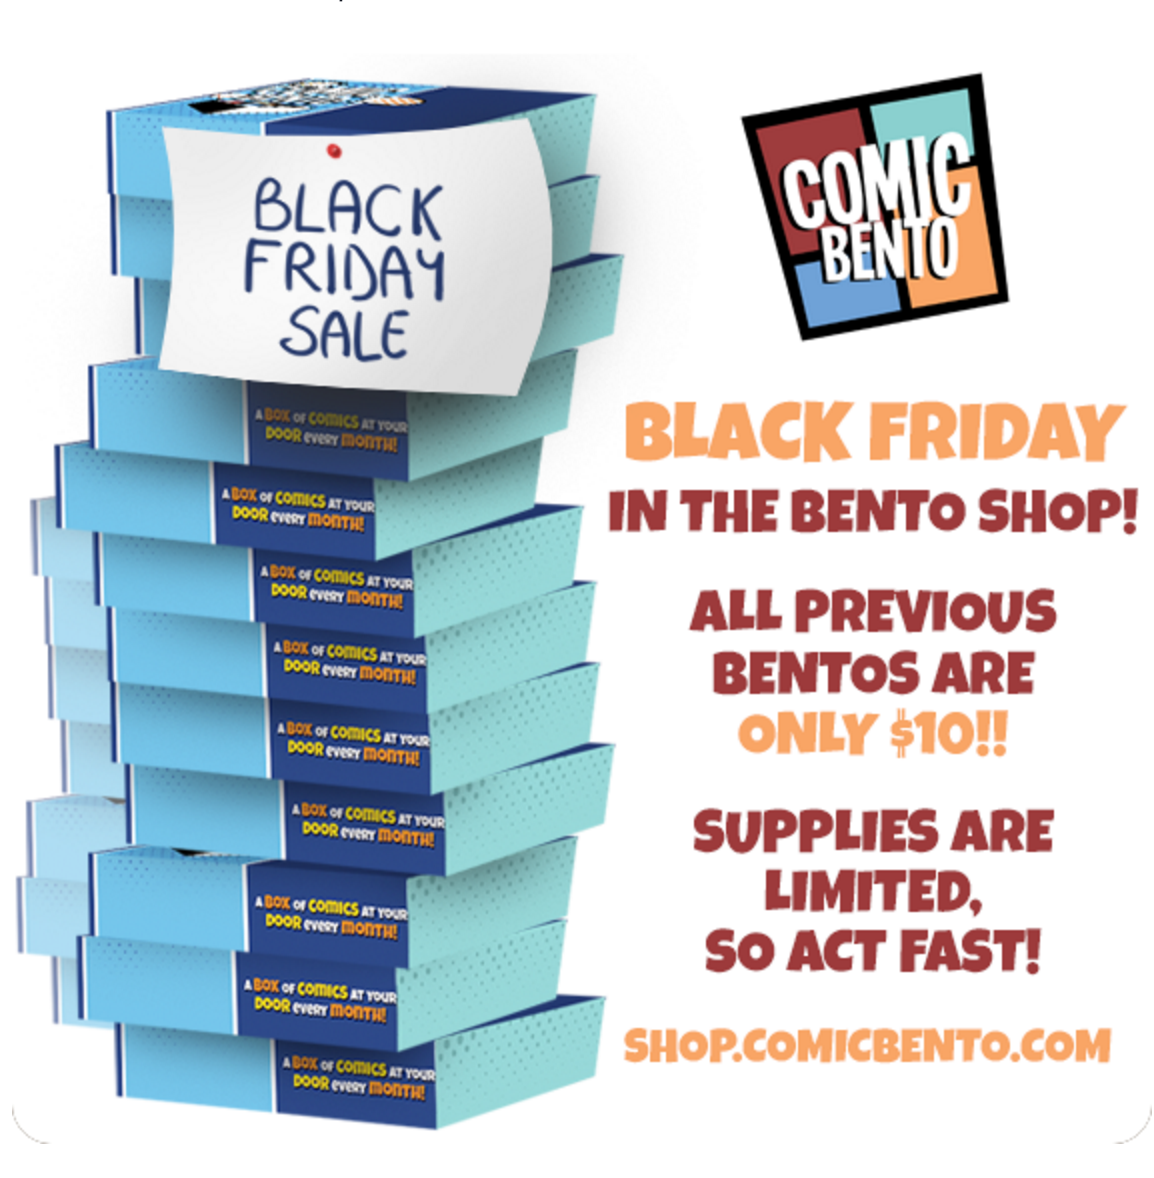 Comic Bento Black Friday Deal – $10 Previous Bentos!